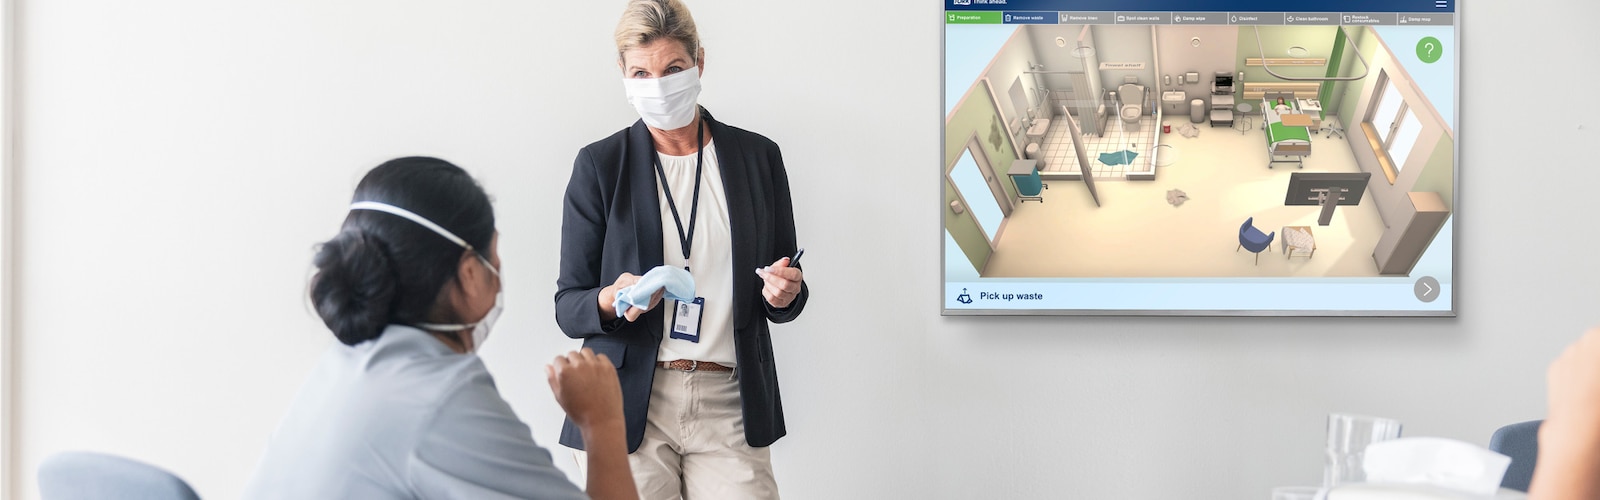 Tork interaktivna obuka za čistu bolnicu 